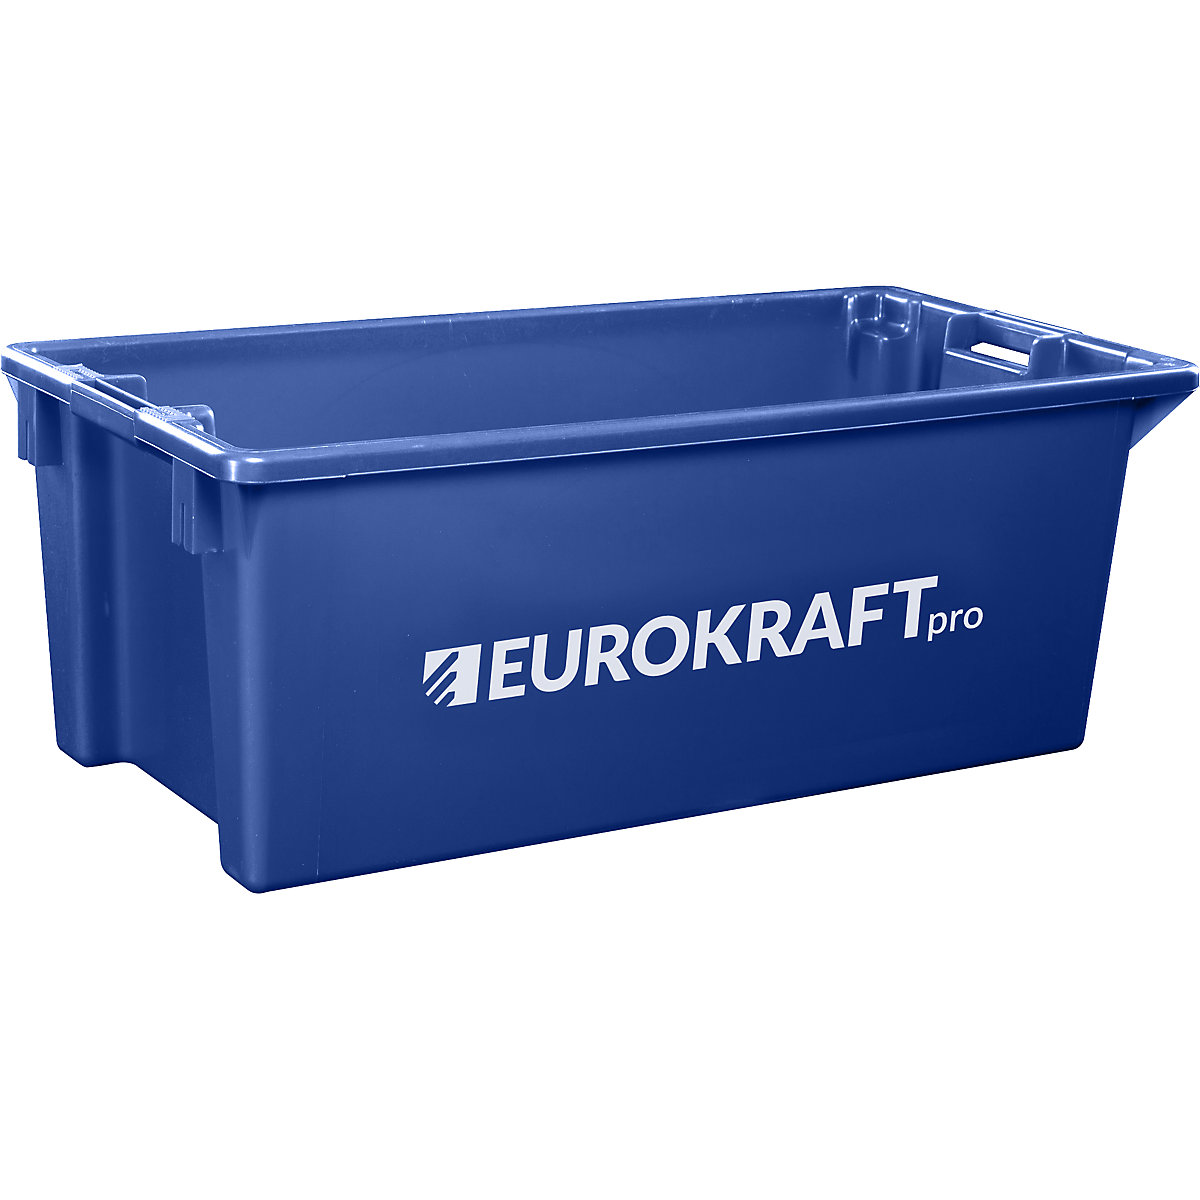 EUROKRAFTpro – Spremnik za slaganje od polipropilena pogodnog za kontakt s prehrambenim proizvodima, volumen 13 l, pak. 4 kom., zatvorene stijenke i dno, u plavoj boji